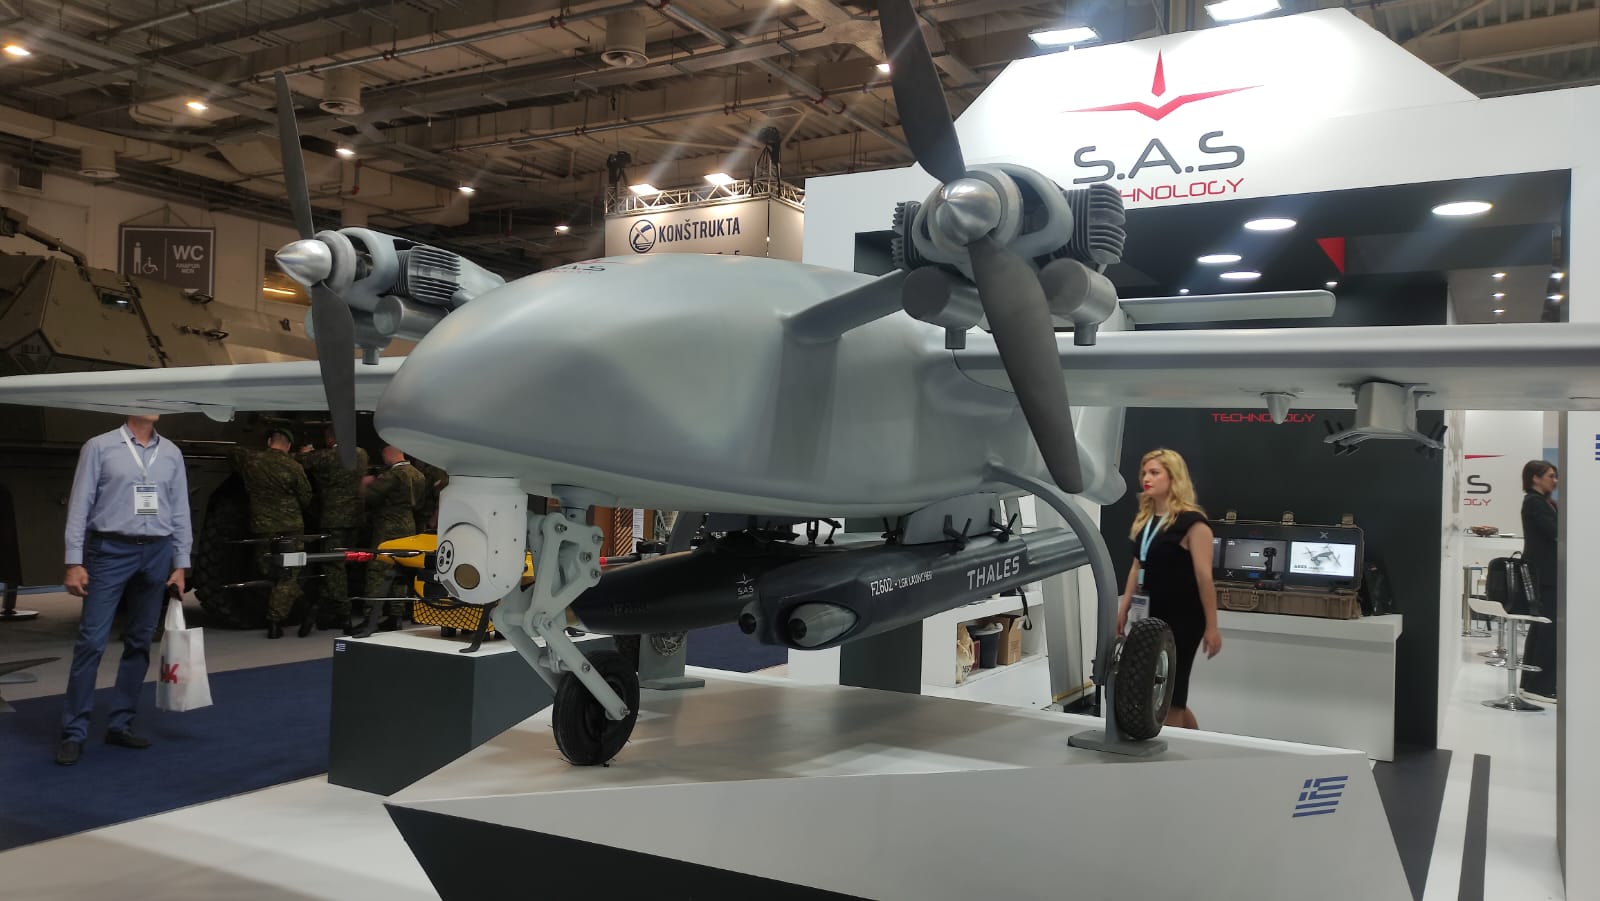 Présentation de Talos II, un drone de reconnaissance pouvant atteindre une vitesse de 200 km/h, une portée de 500 km et une autonomie de vol de plus de 20 heures.